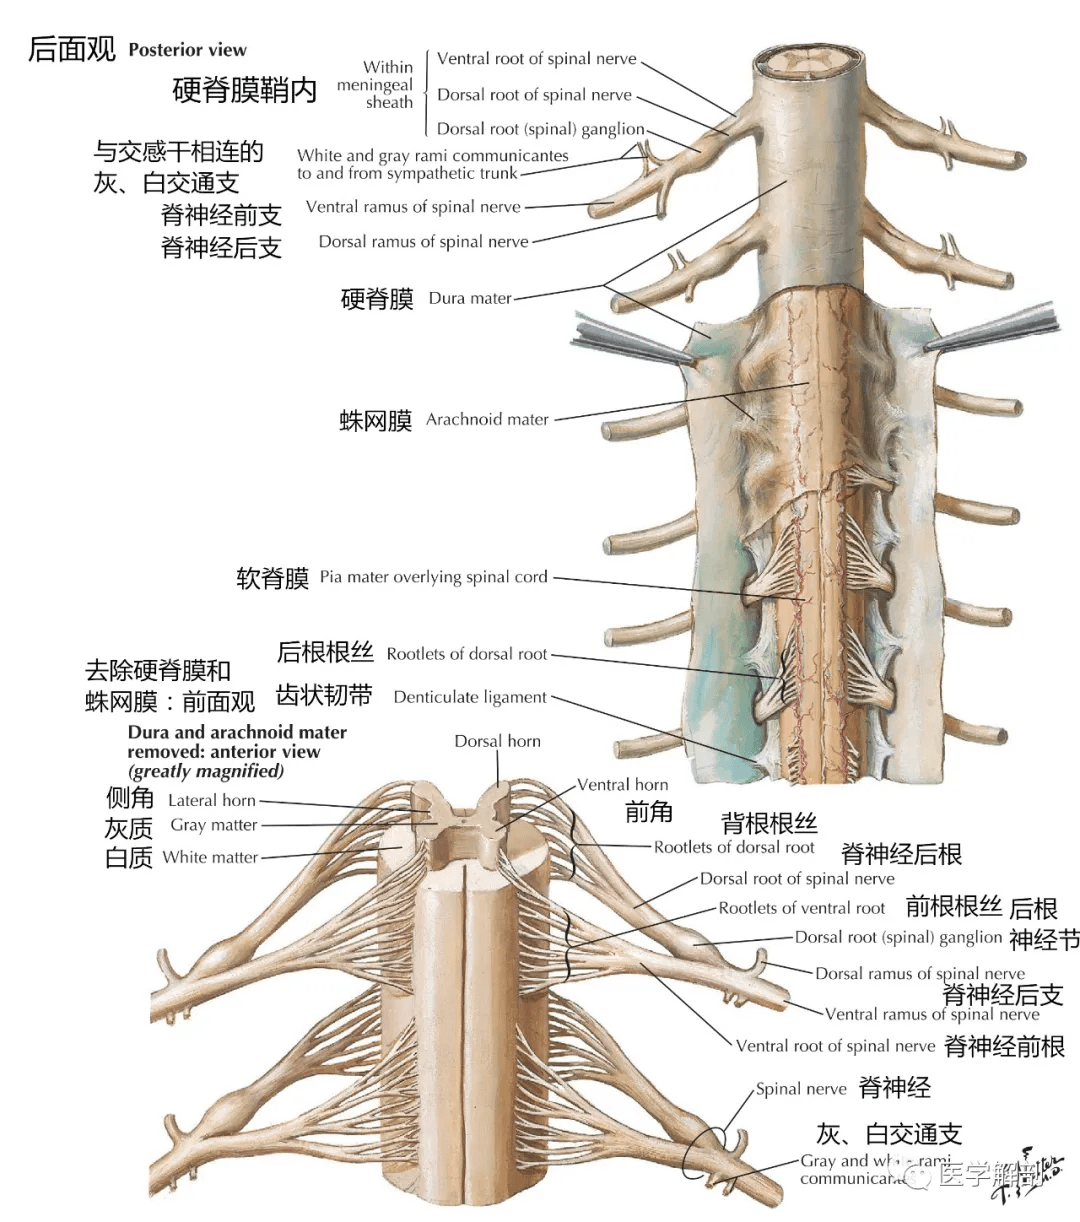 高清解剖图谱:脊神经详细解剖